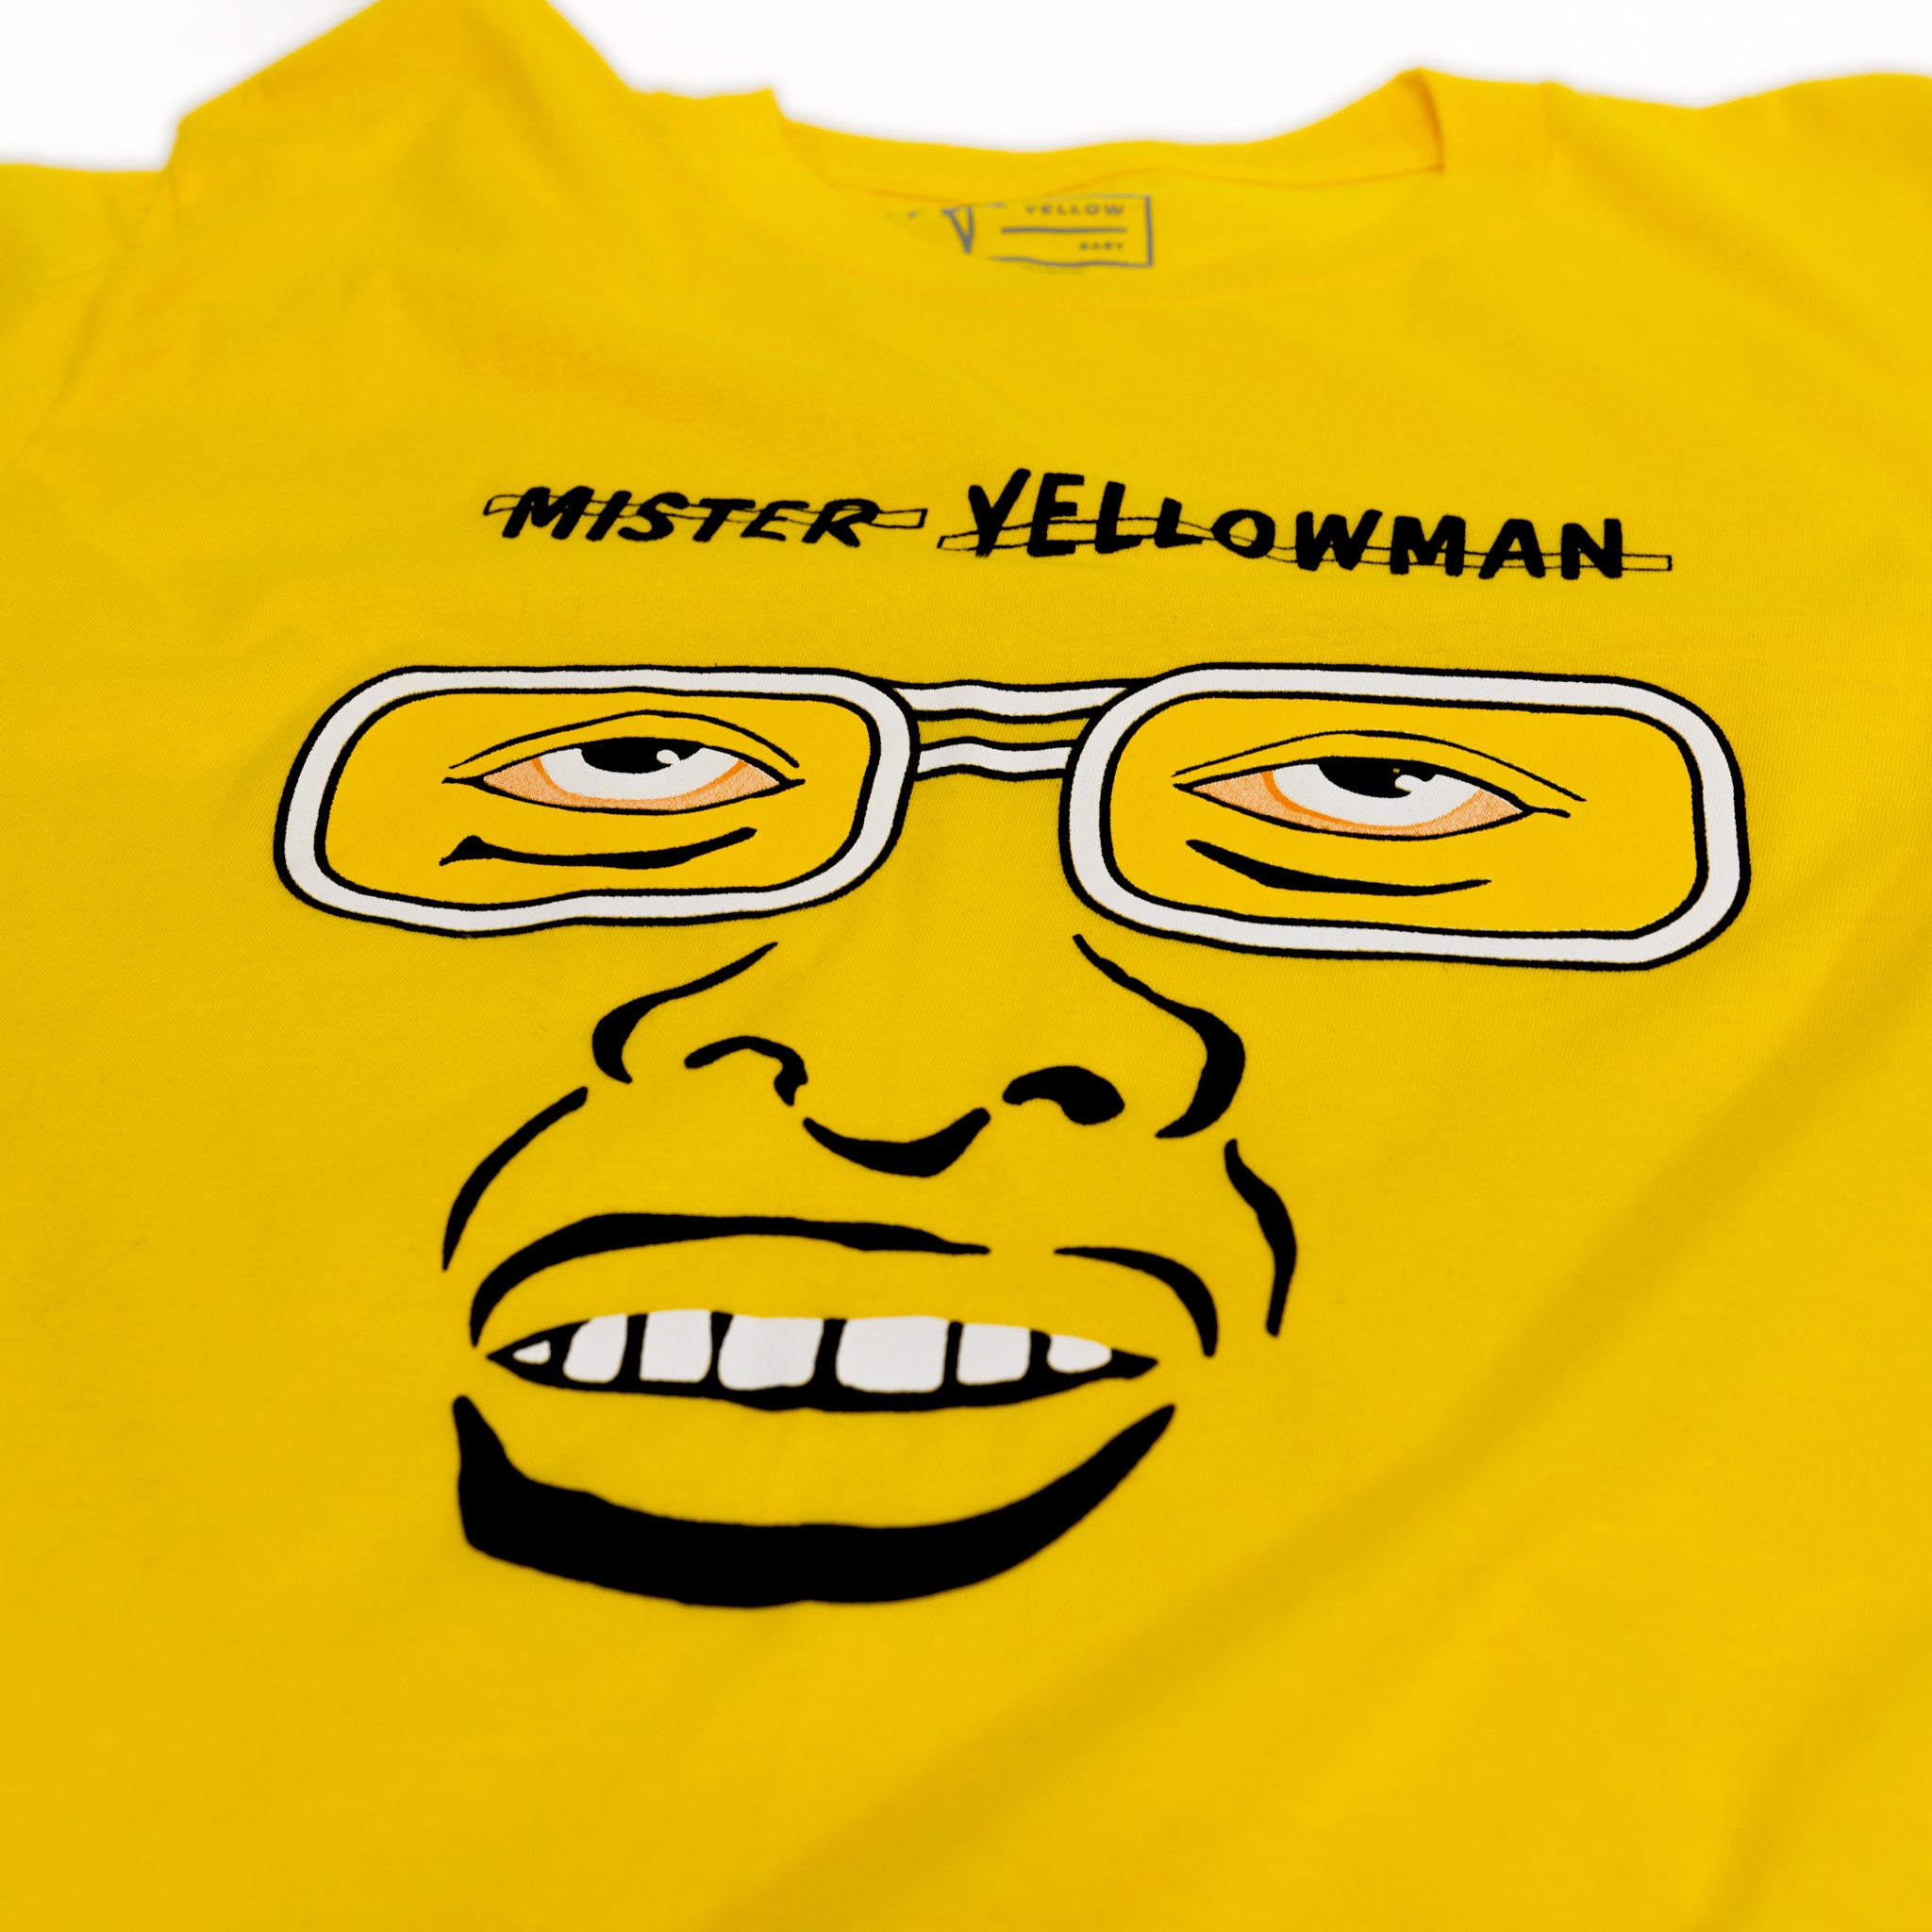 Mister Yellowman T-Shirt